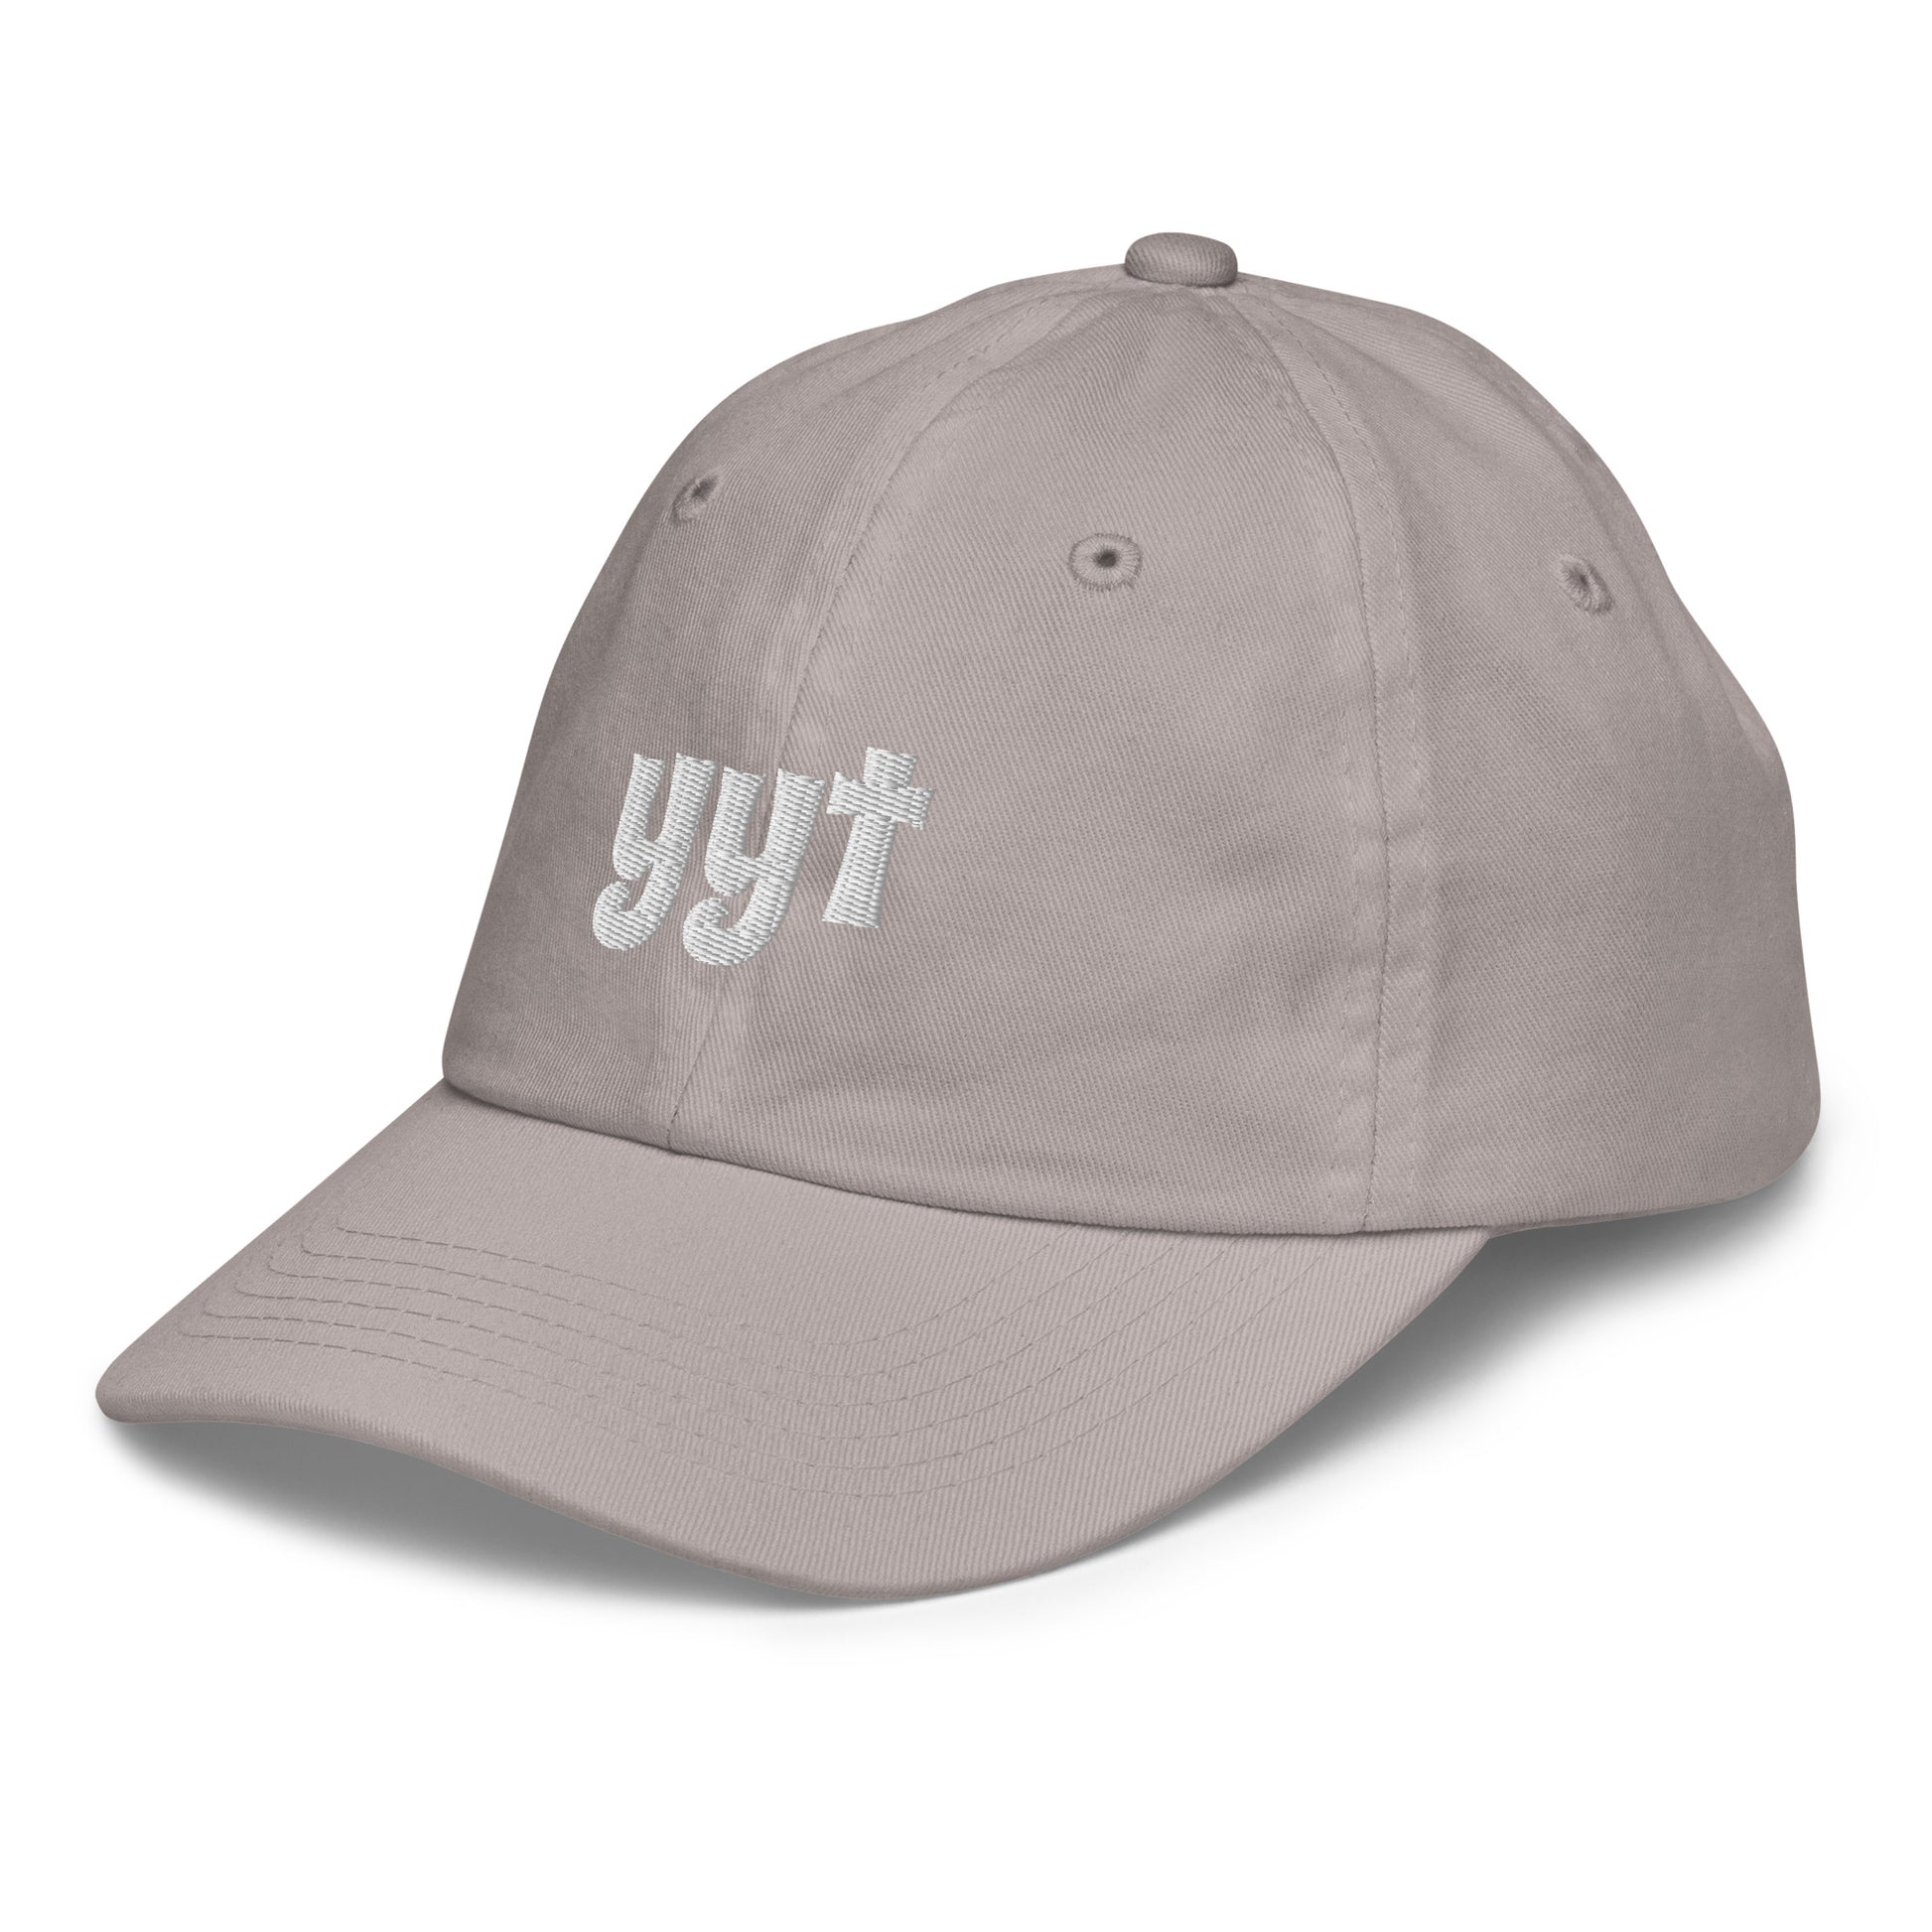 Groovy Kid's Baseball Cap - White • YYT St. John's • YHM Designs - Image 20